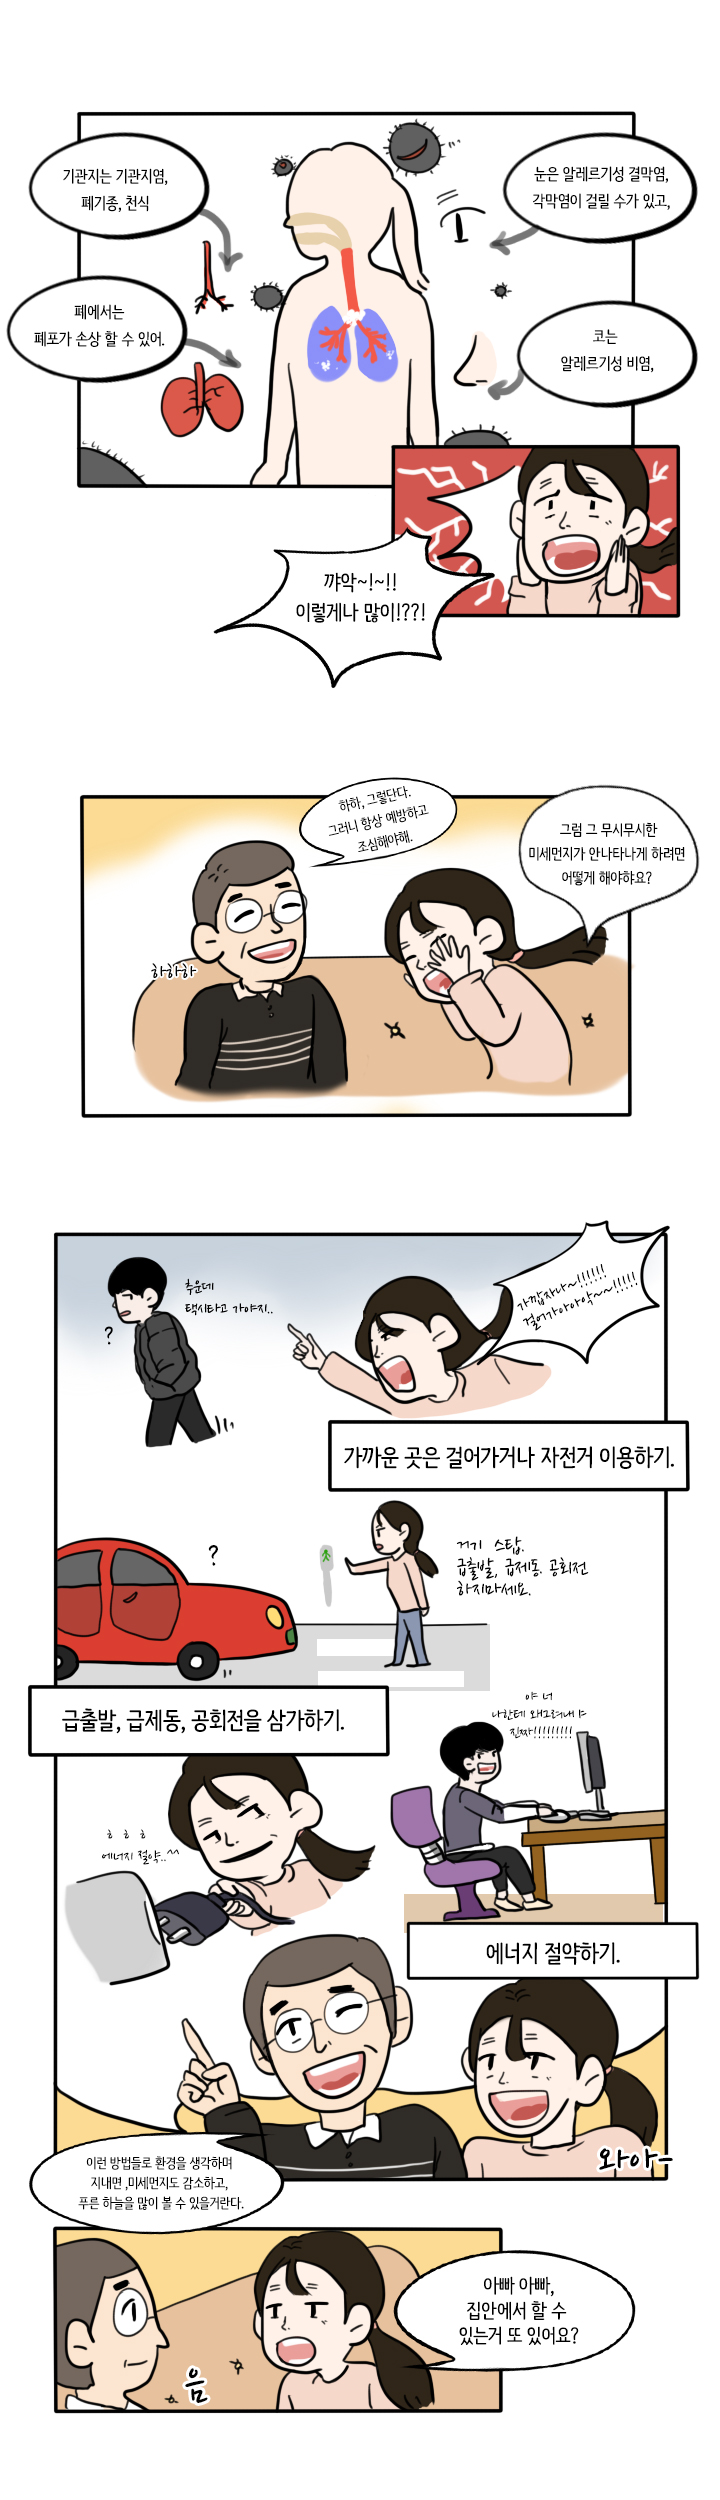 (푸른하늘 웹툰공모전 입선) 수아의 행복한하루 feat 사라져라 미세먼지3